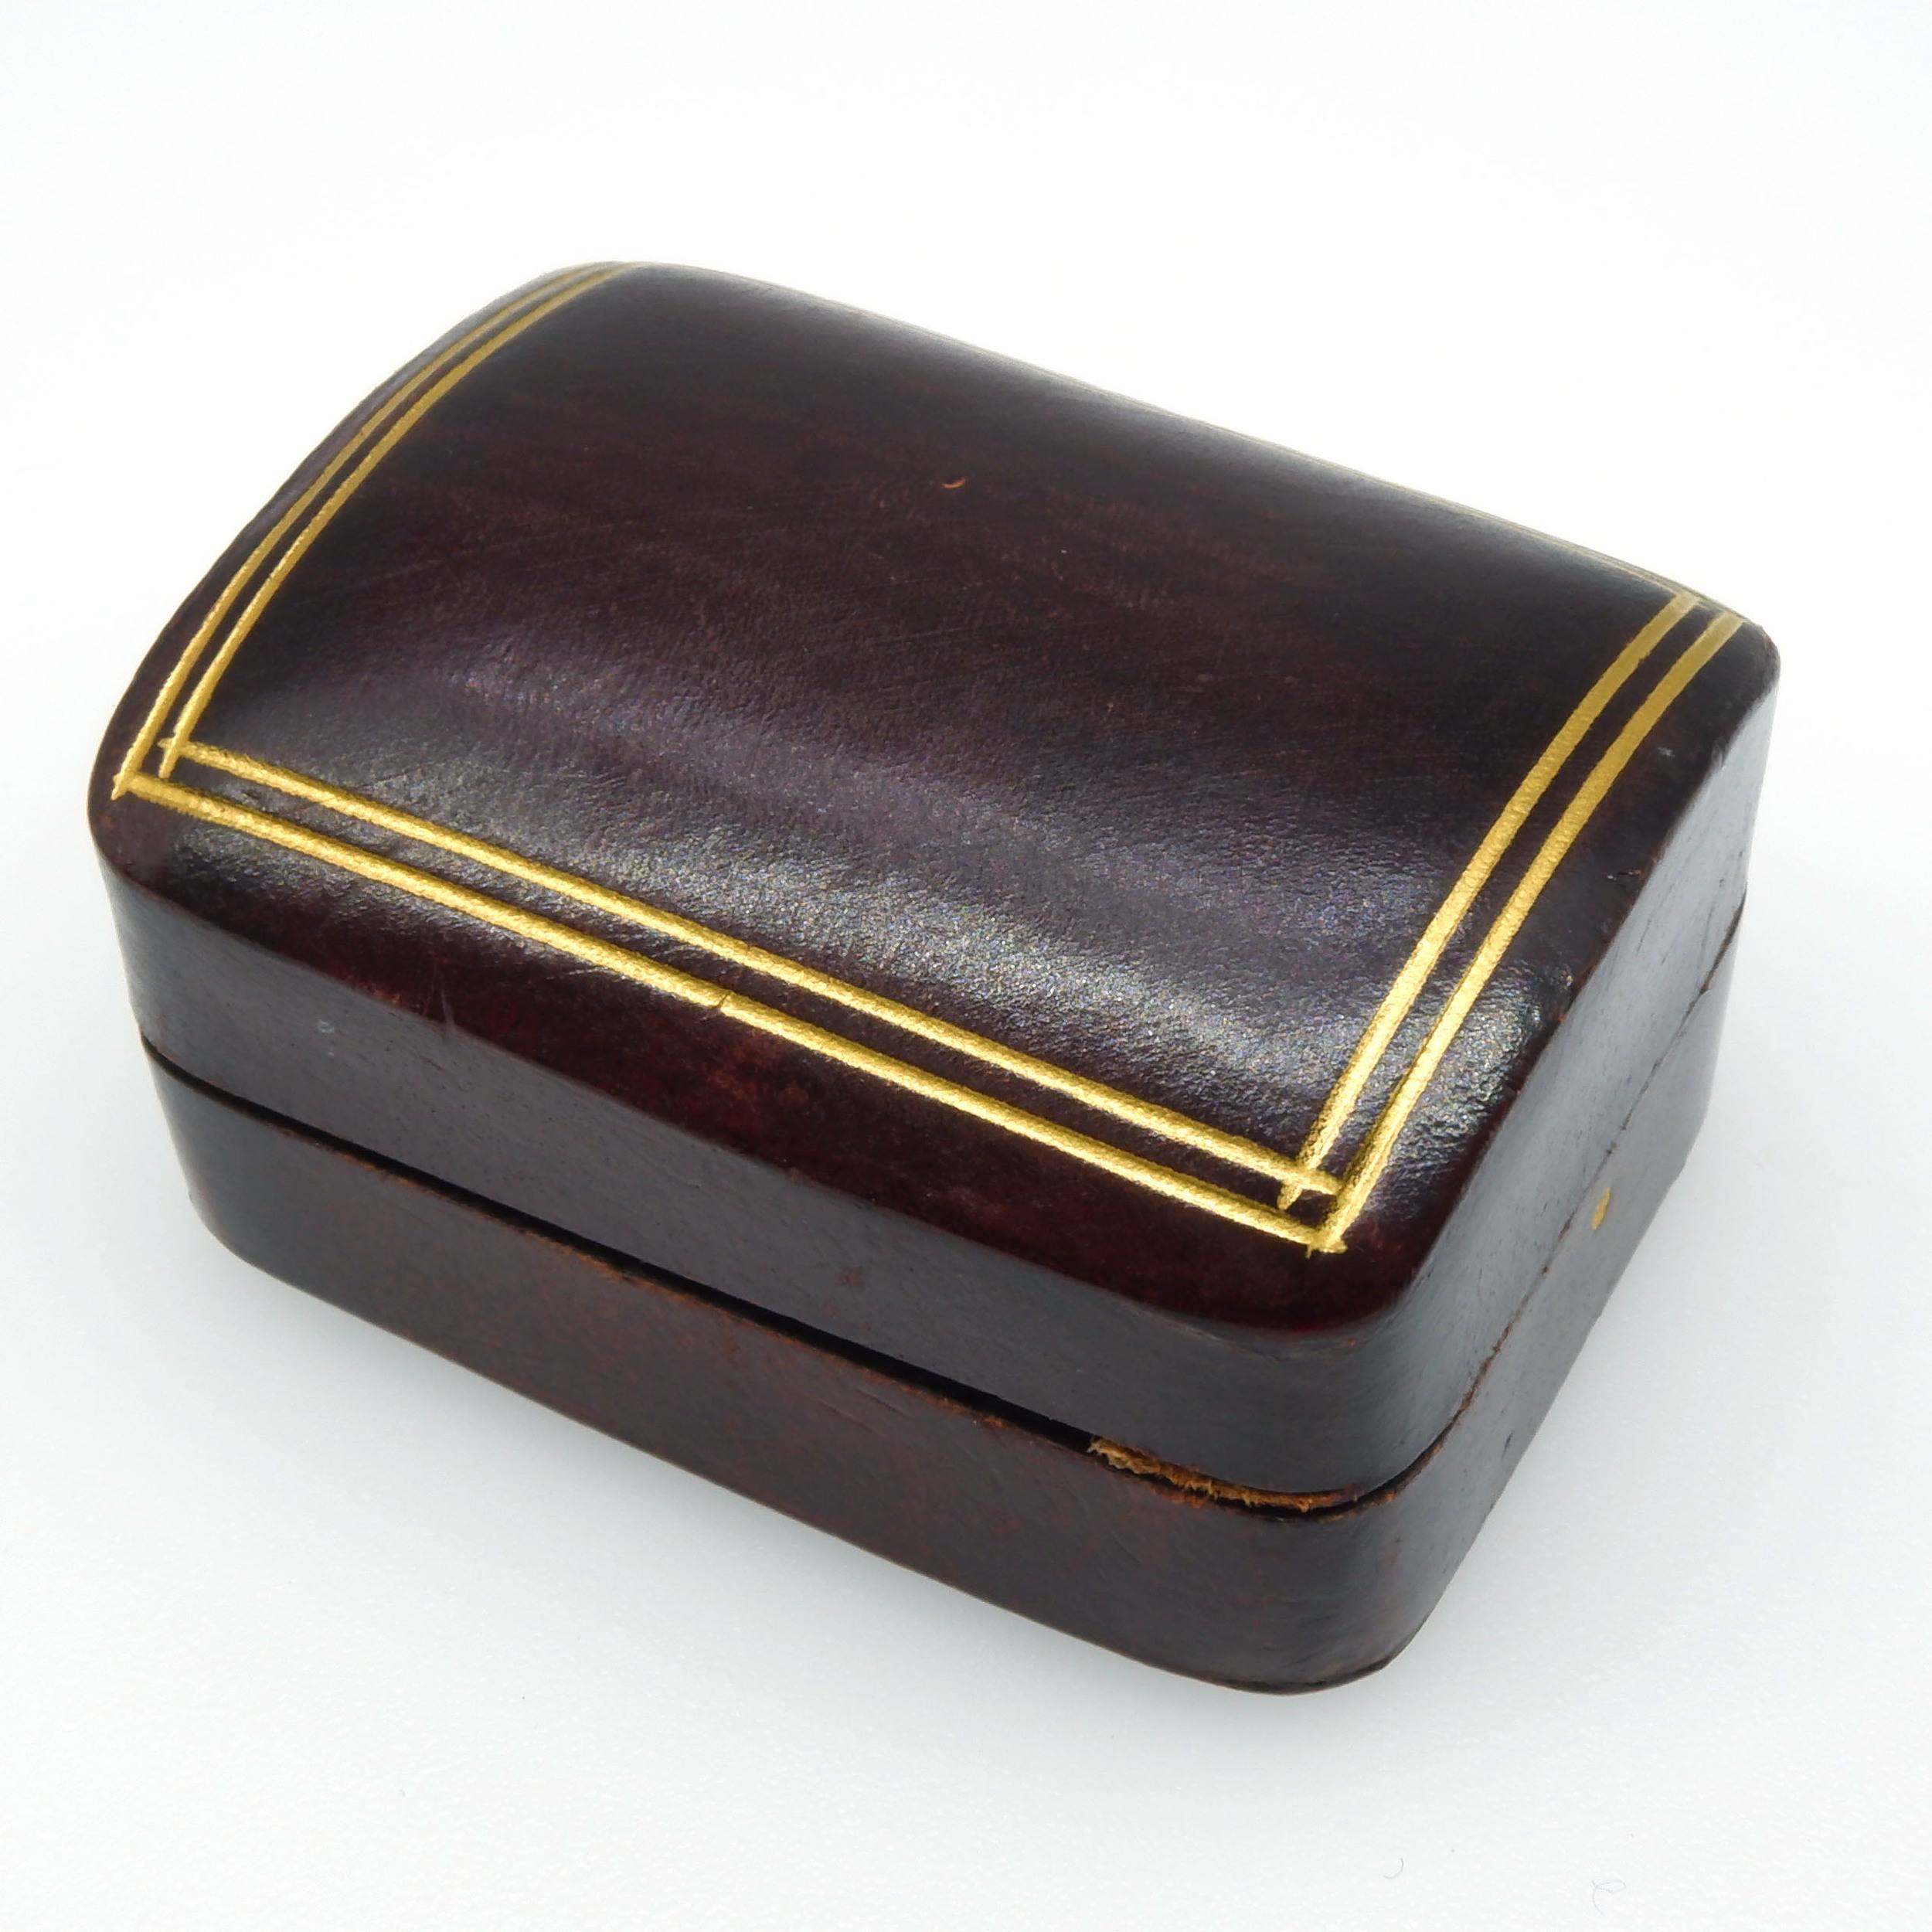 'Beautiful Italian Gilt Tooled Leather Box'